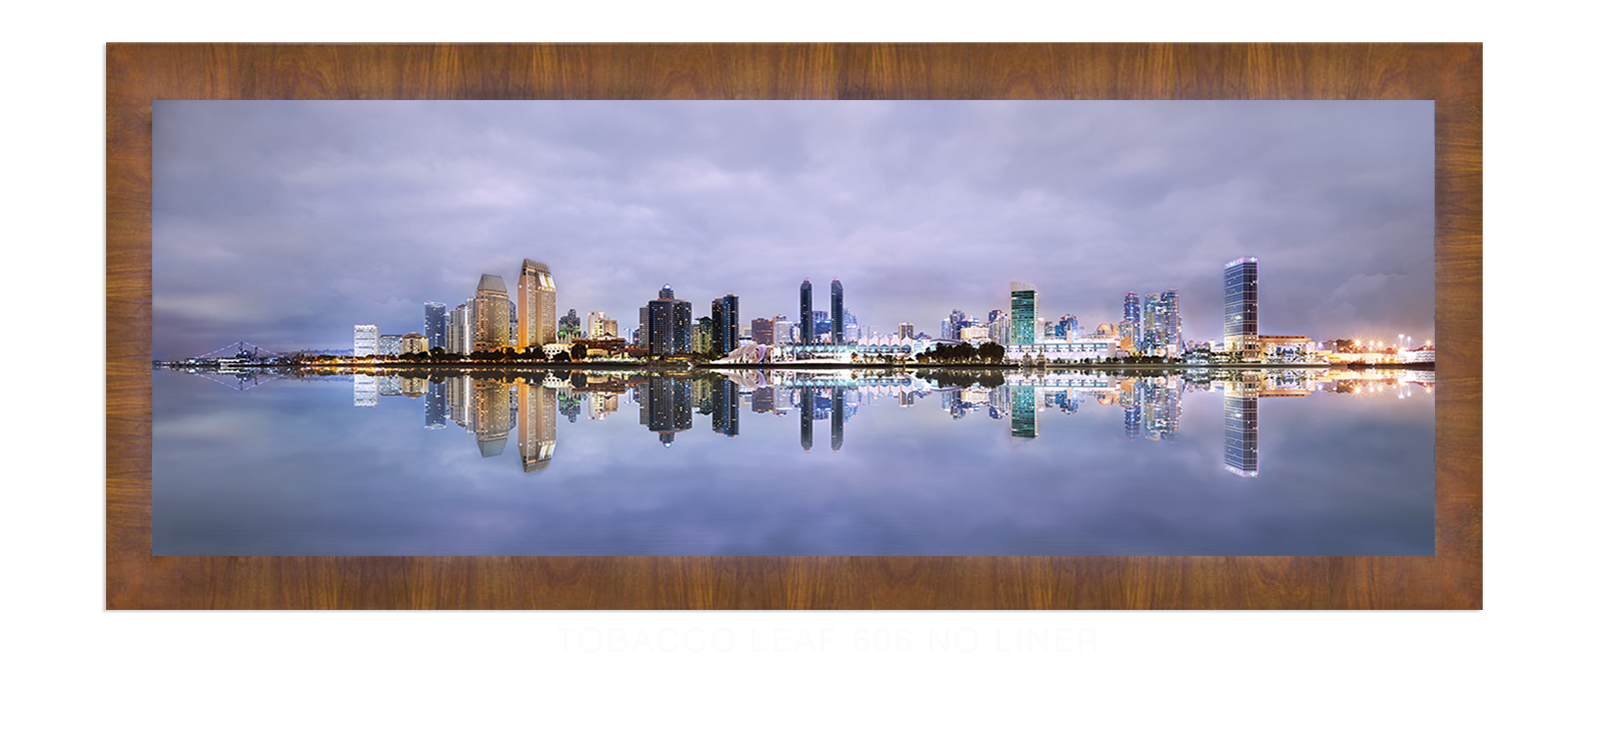 25INTERLUDE DIEGO Tobacco Leaf 606 w_No Liner T